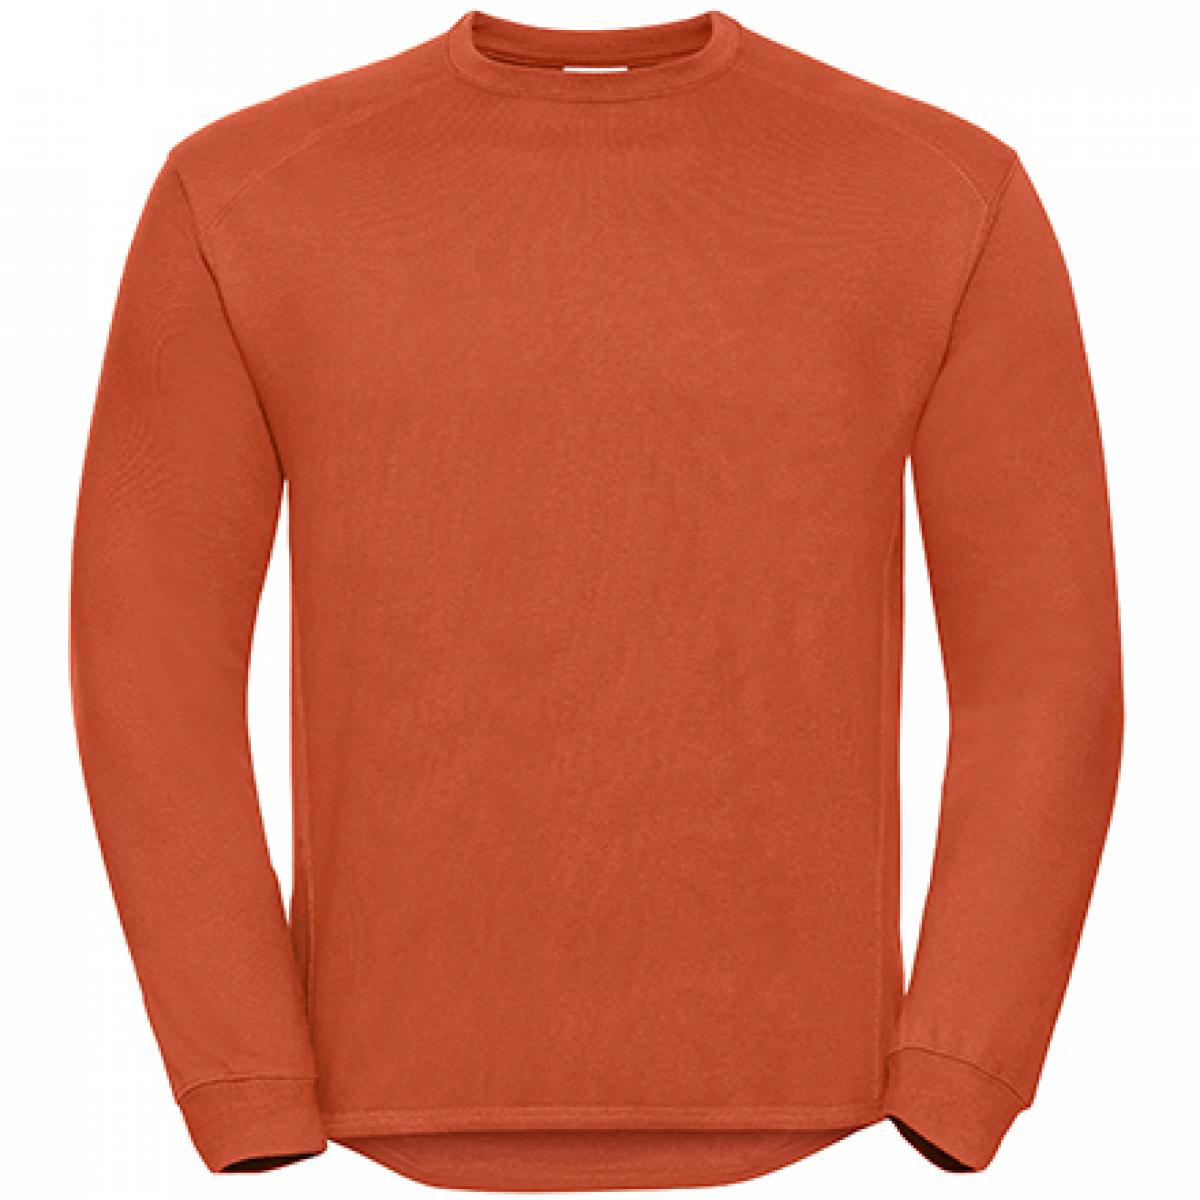 Hersteller: Russell Herstellernummer: R-013M-0 Artikelbezeichnung: Workwear-Sweatshirt / Pullover Farbe: Orange